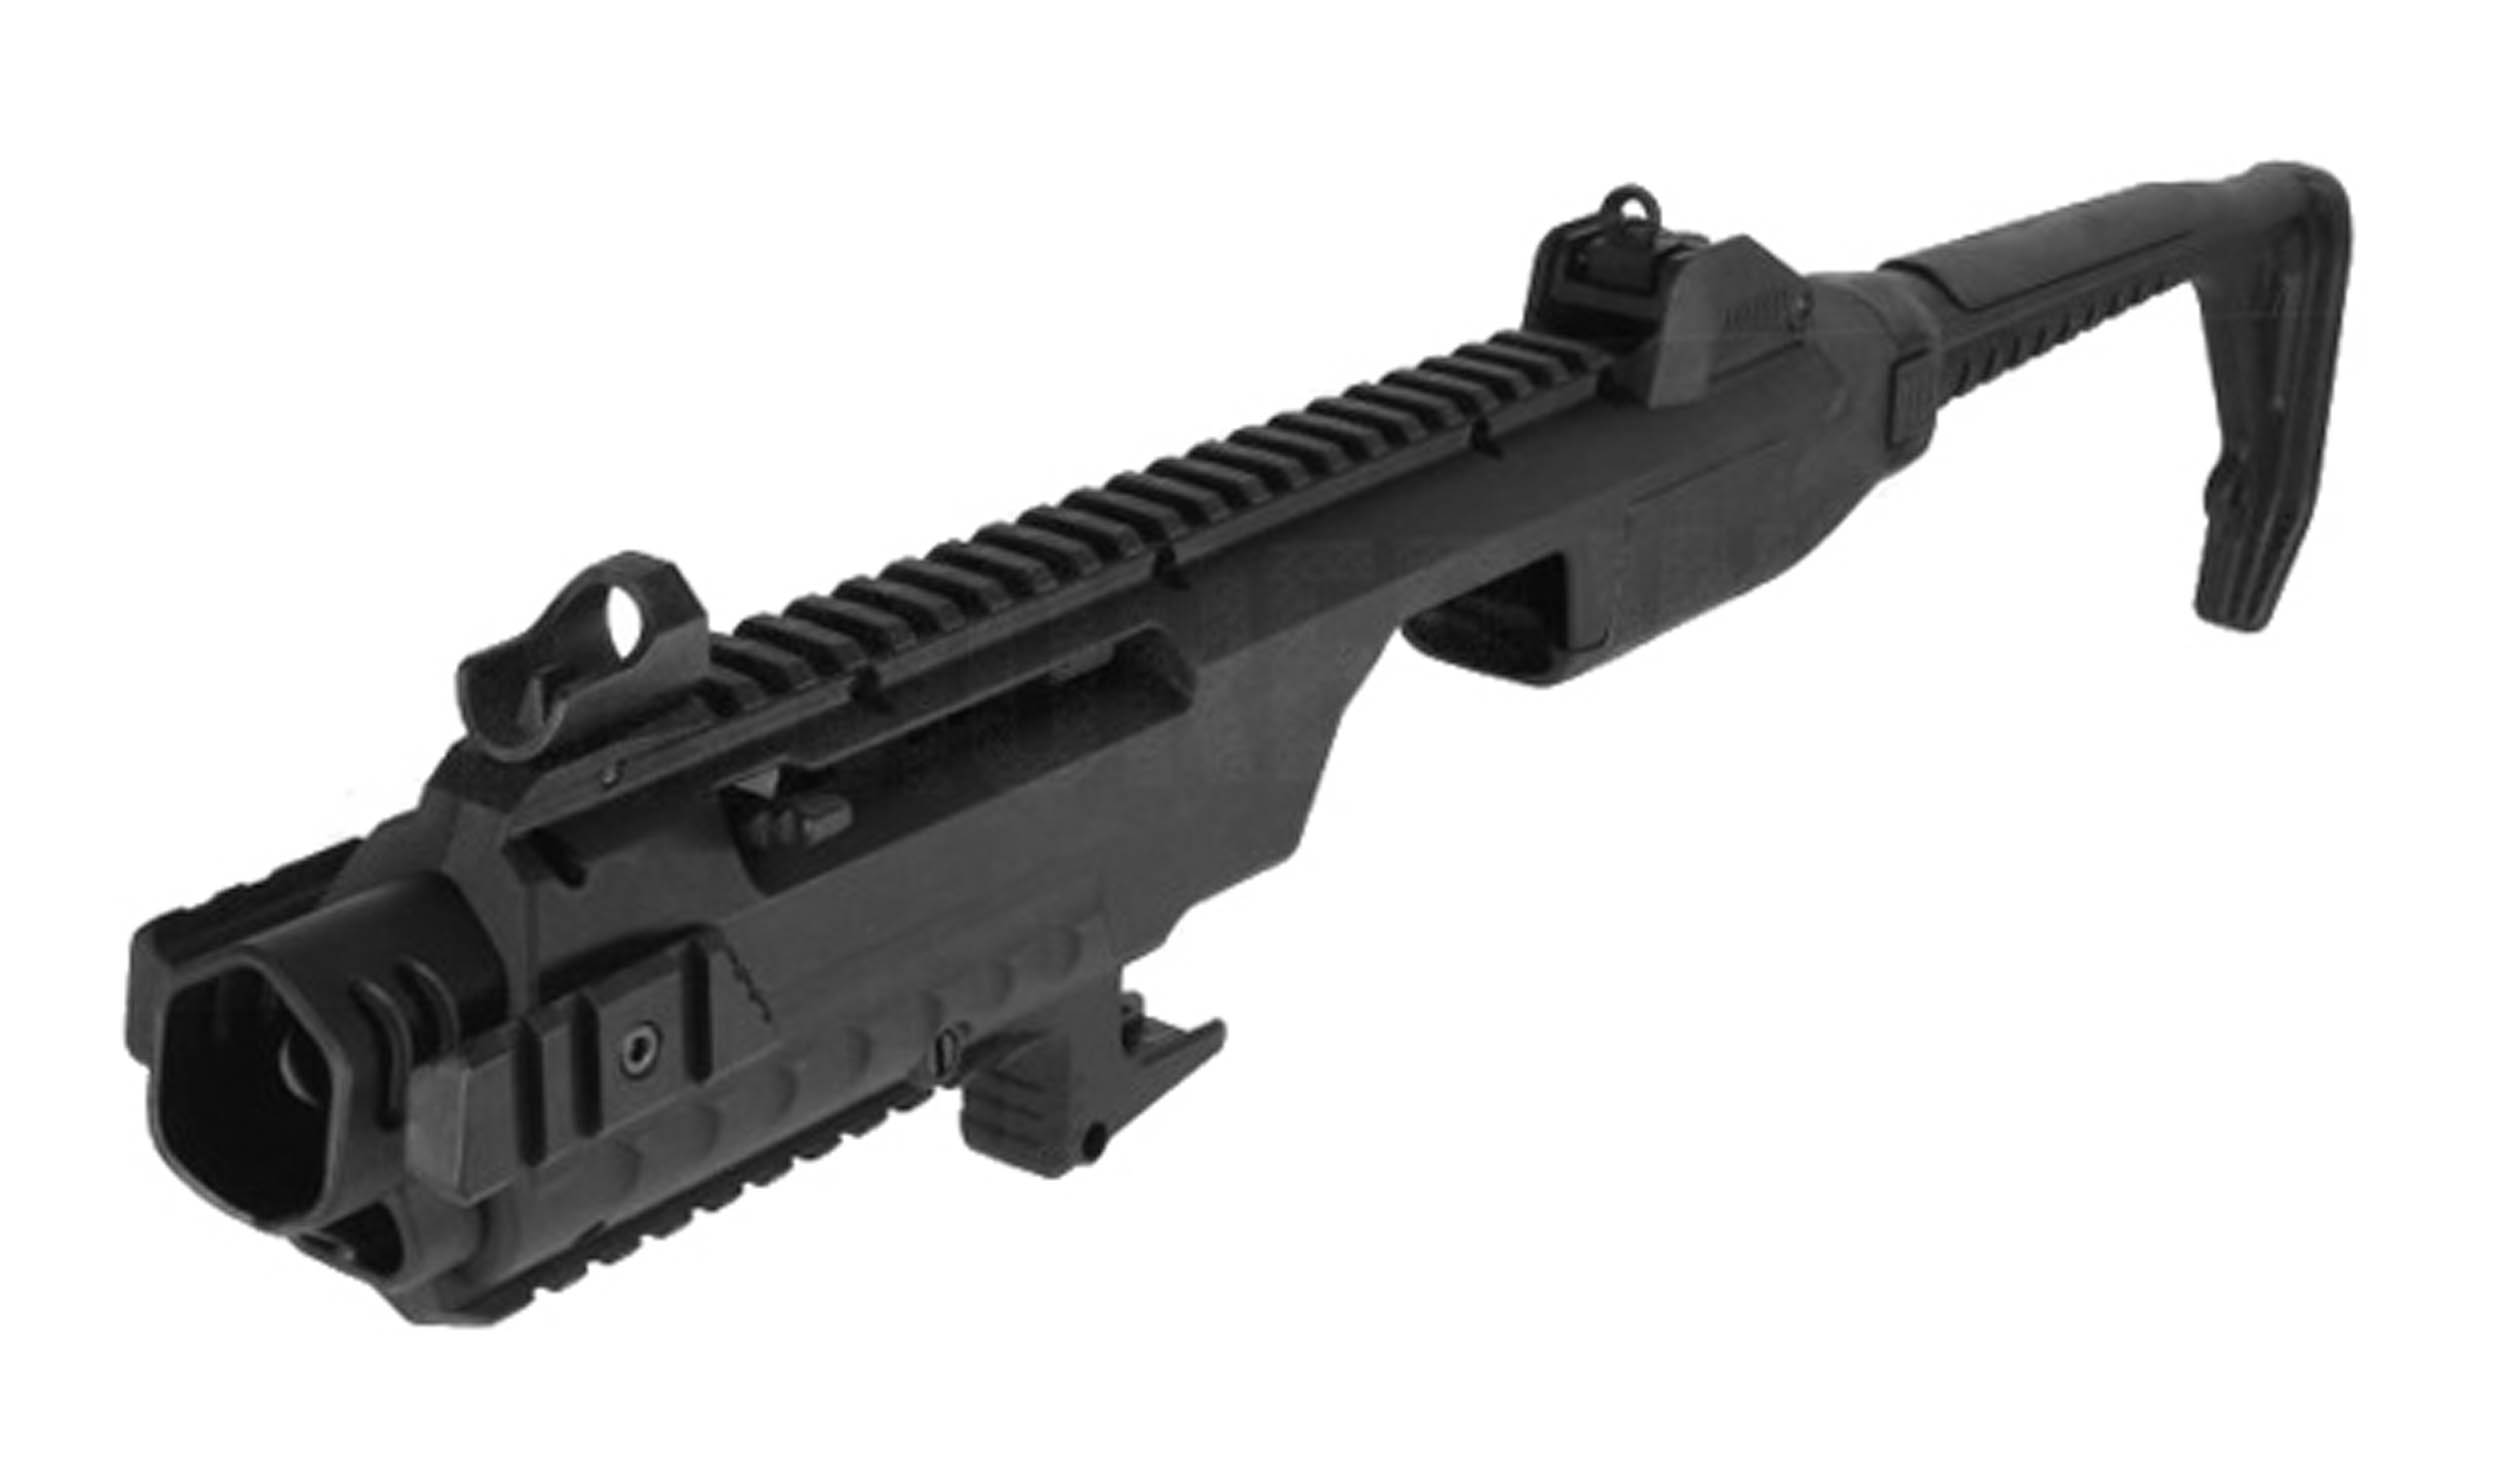 A64325 Kit Carbine pour GBB VX AW Custom - A64325